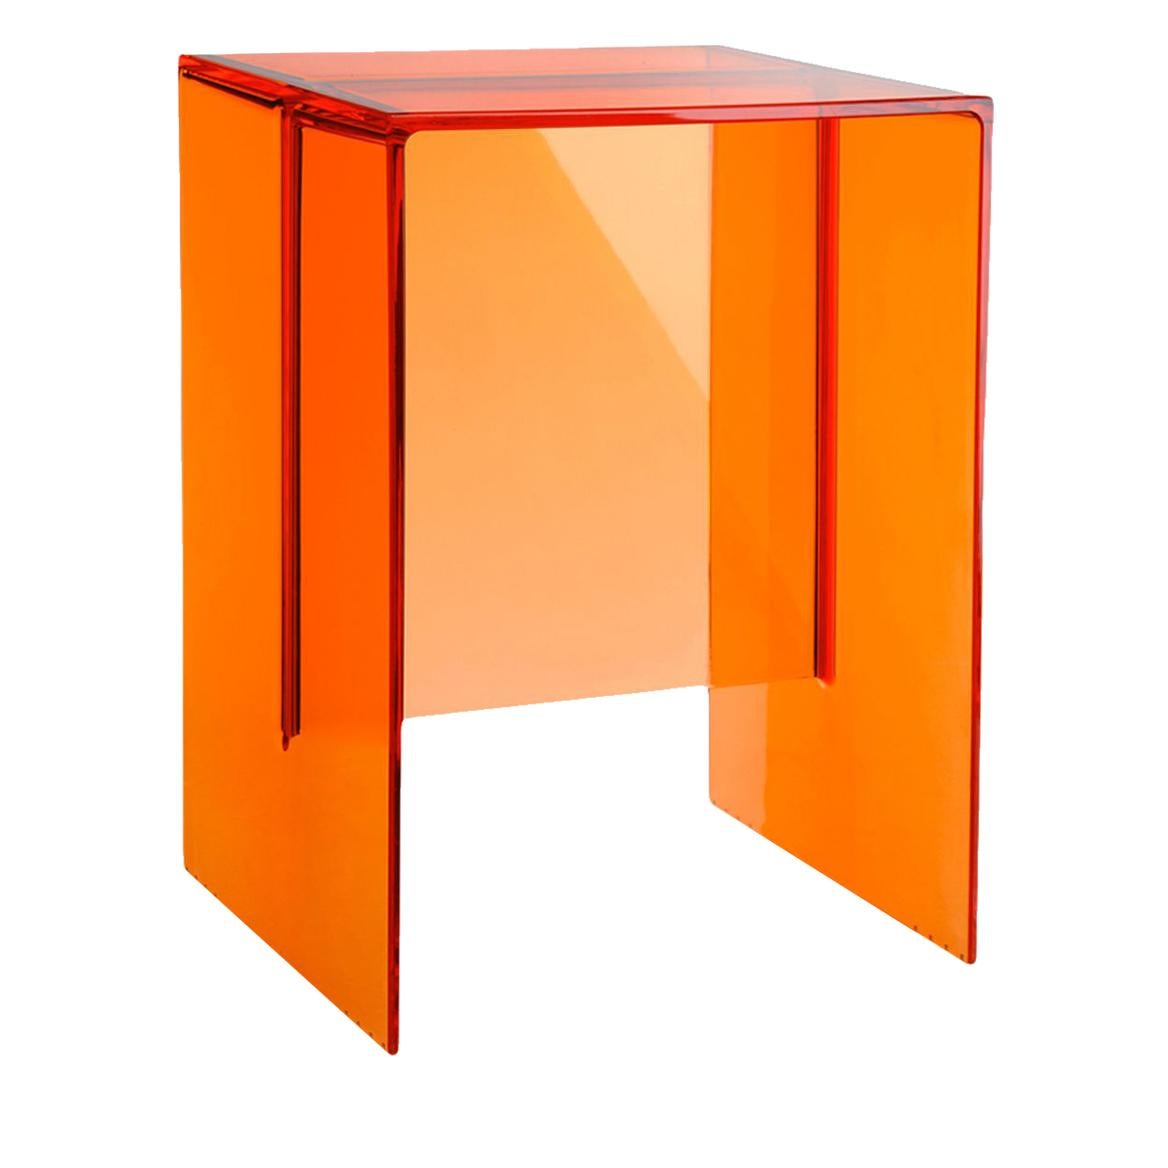 Kartell Max-Beam Beistelltisch in Rost-orange von Ludovica und Roberto Palomba